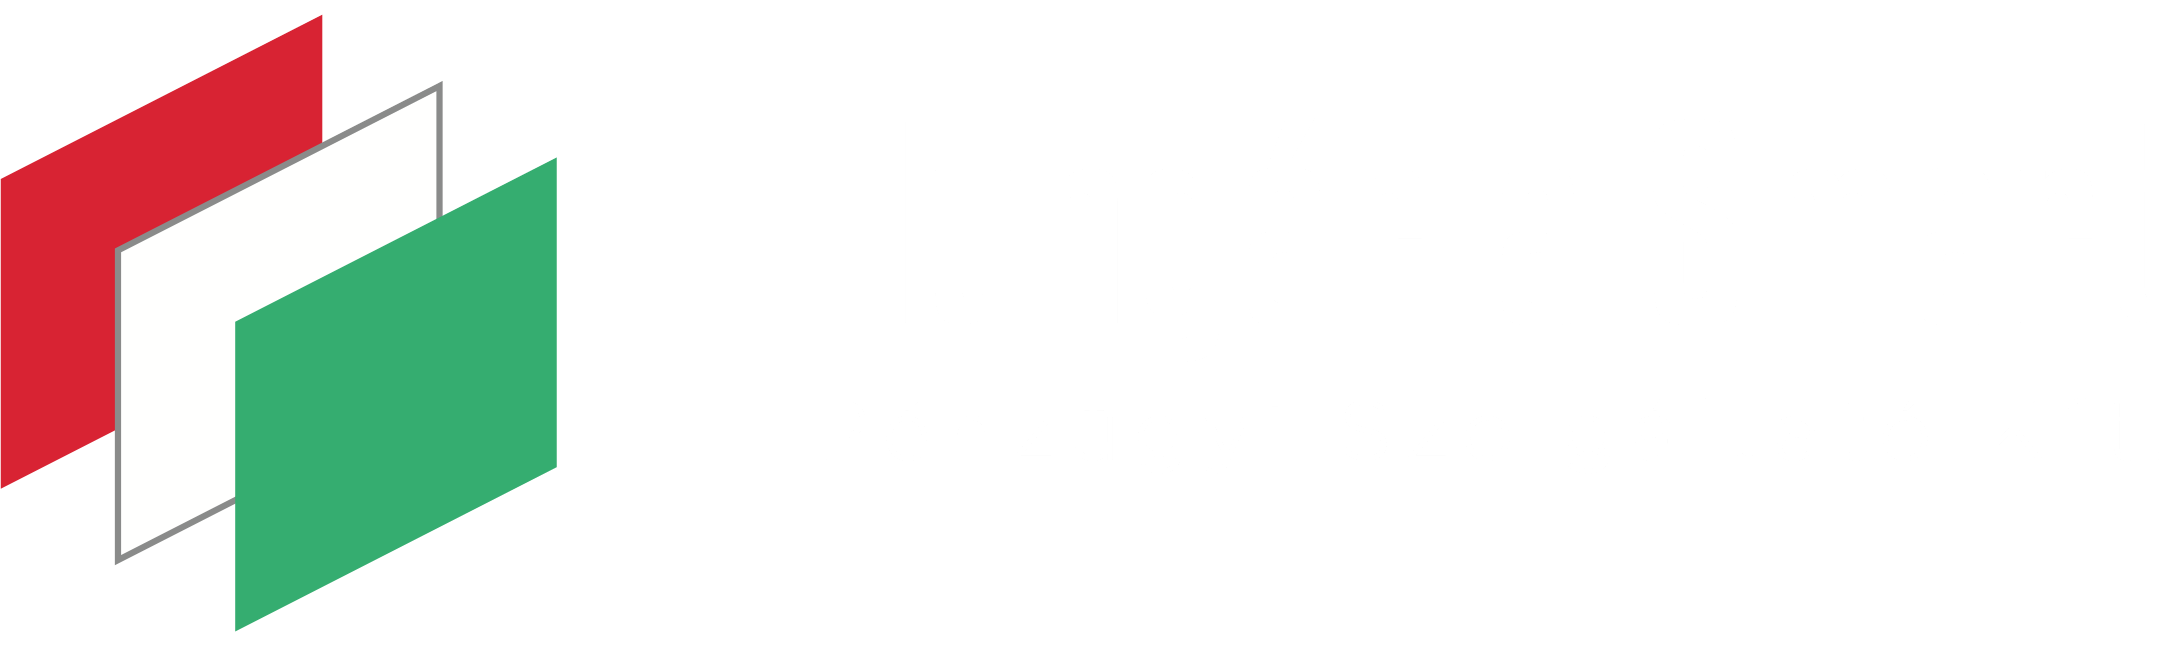 Hungaria Smart Pénzügyi Szolgáltató Kft.